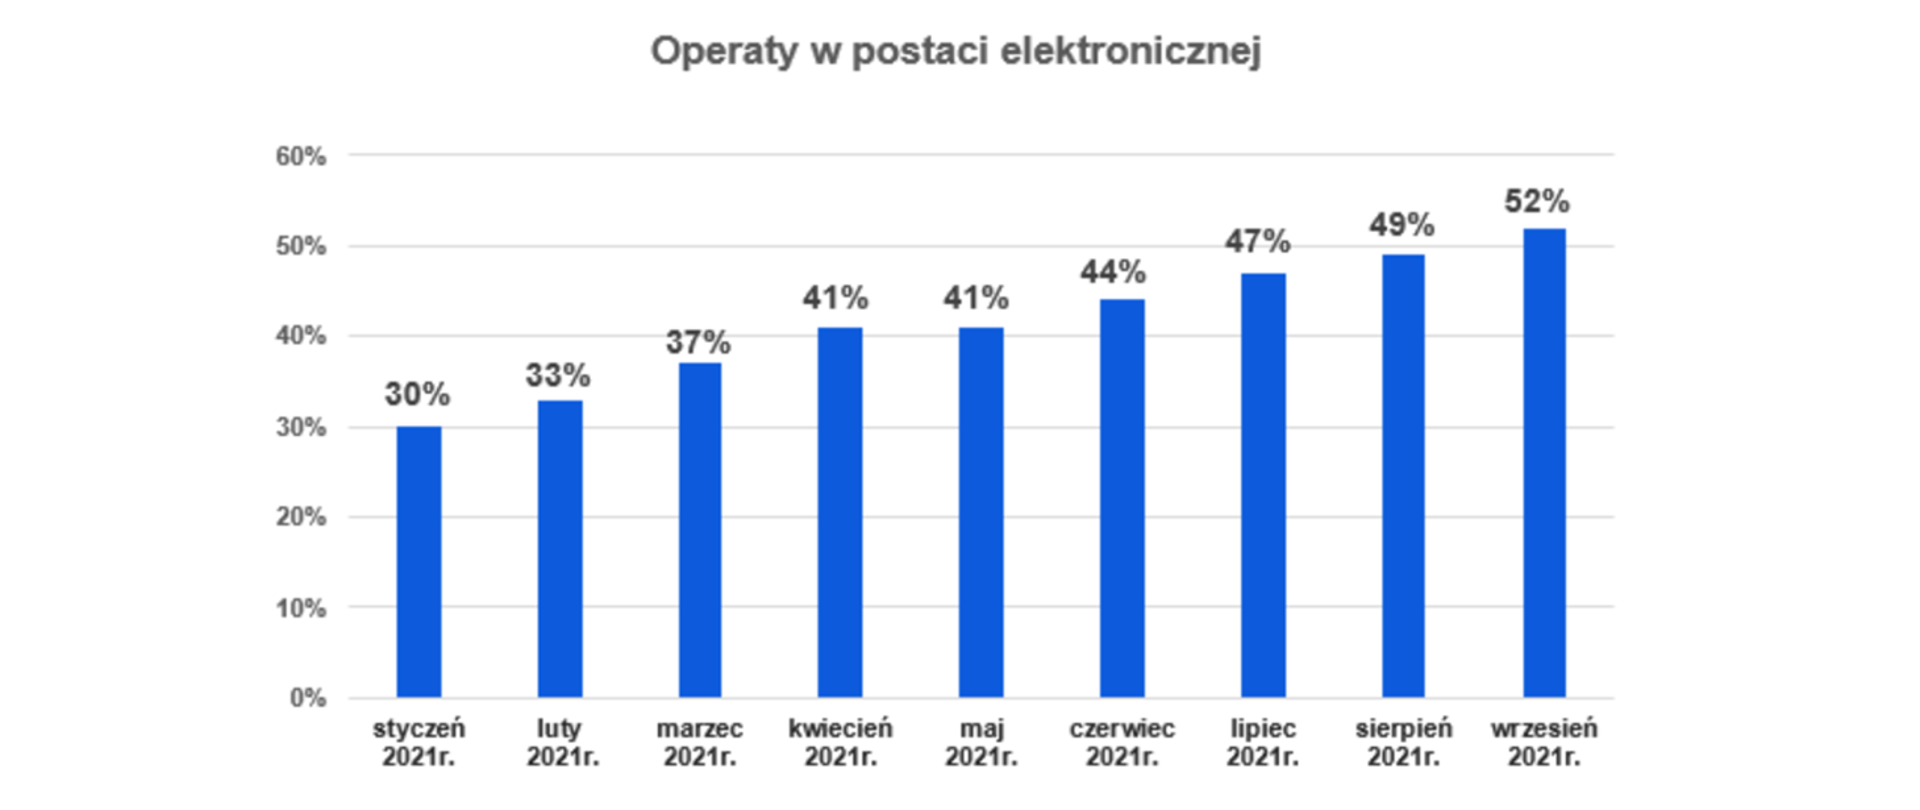 Wykres słupkowy przedstawiający operaty wpływające do PZGiK w formie elektronicznej od stycznia do września 2021 r. W styczniu 30 % operatów wpływało w formie elektronicznej, w lutym - 33%, w marcu - 37%, w kwietniu - 41%, w maju - 41%, w czerwcu - 44%, w lipcu - 47%, w sierpniu - 49%, we wrześniu - 52%. 